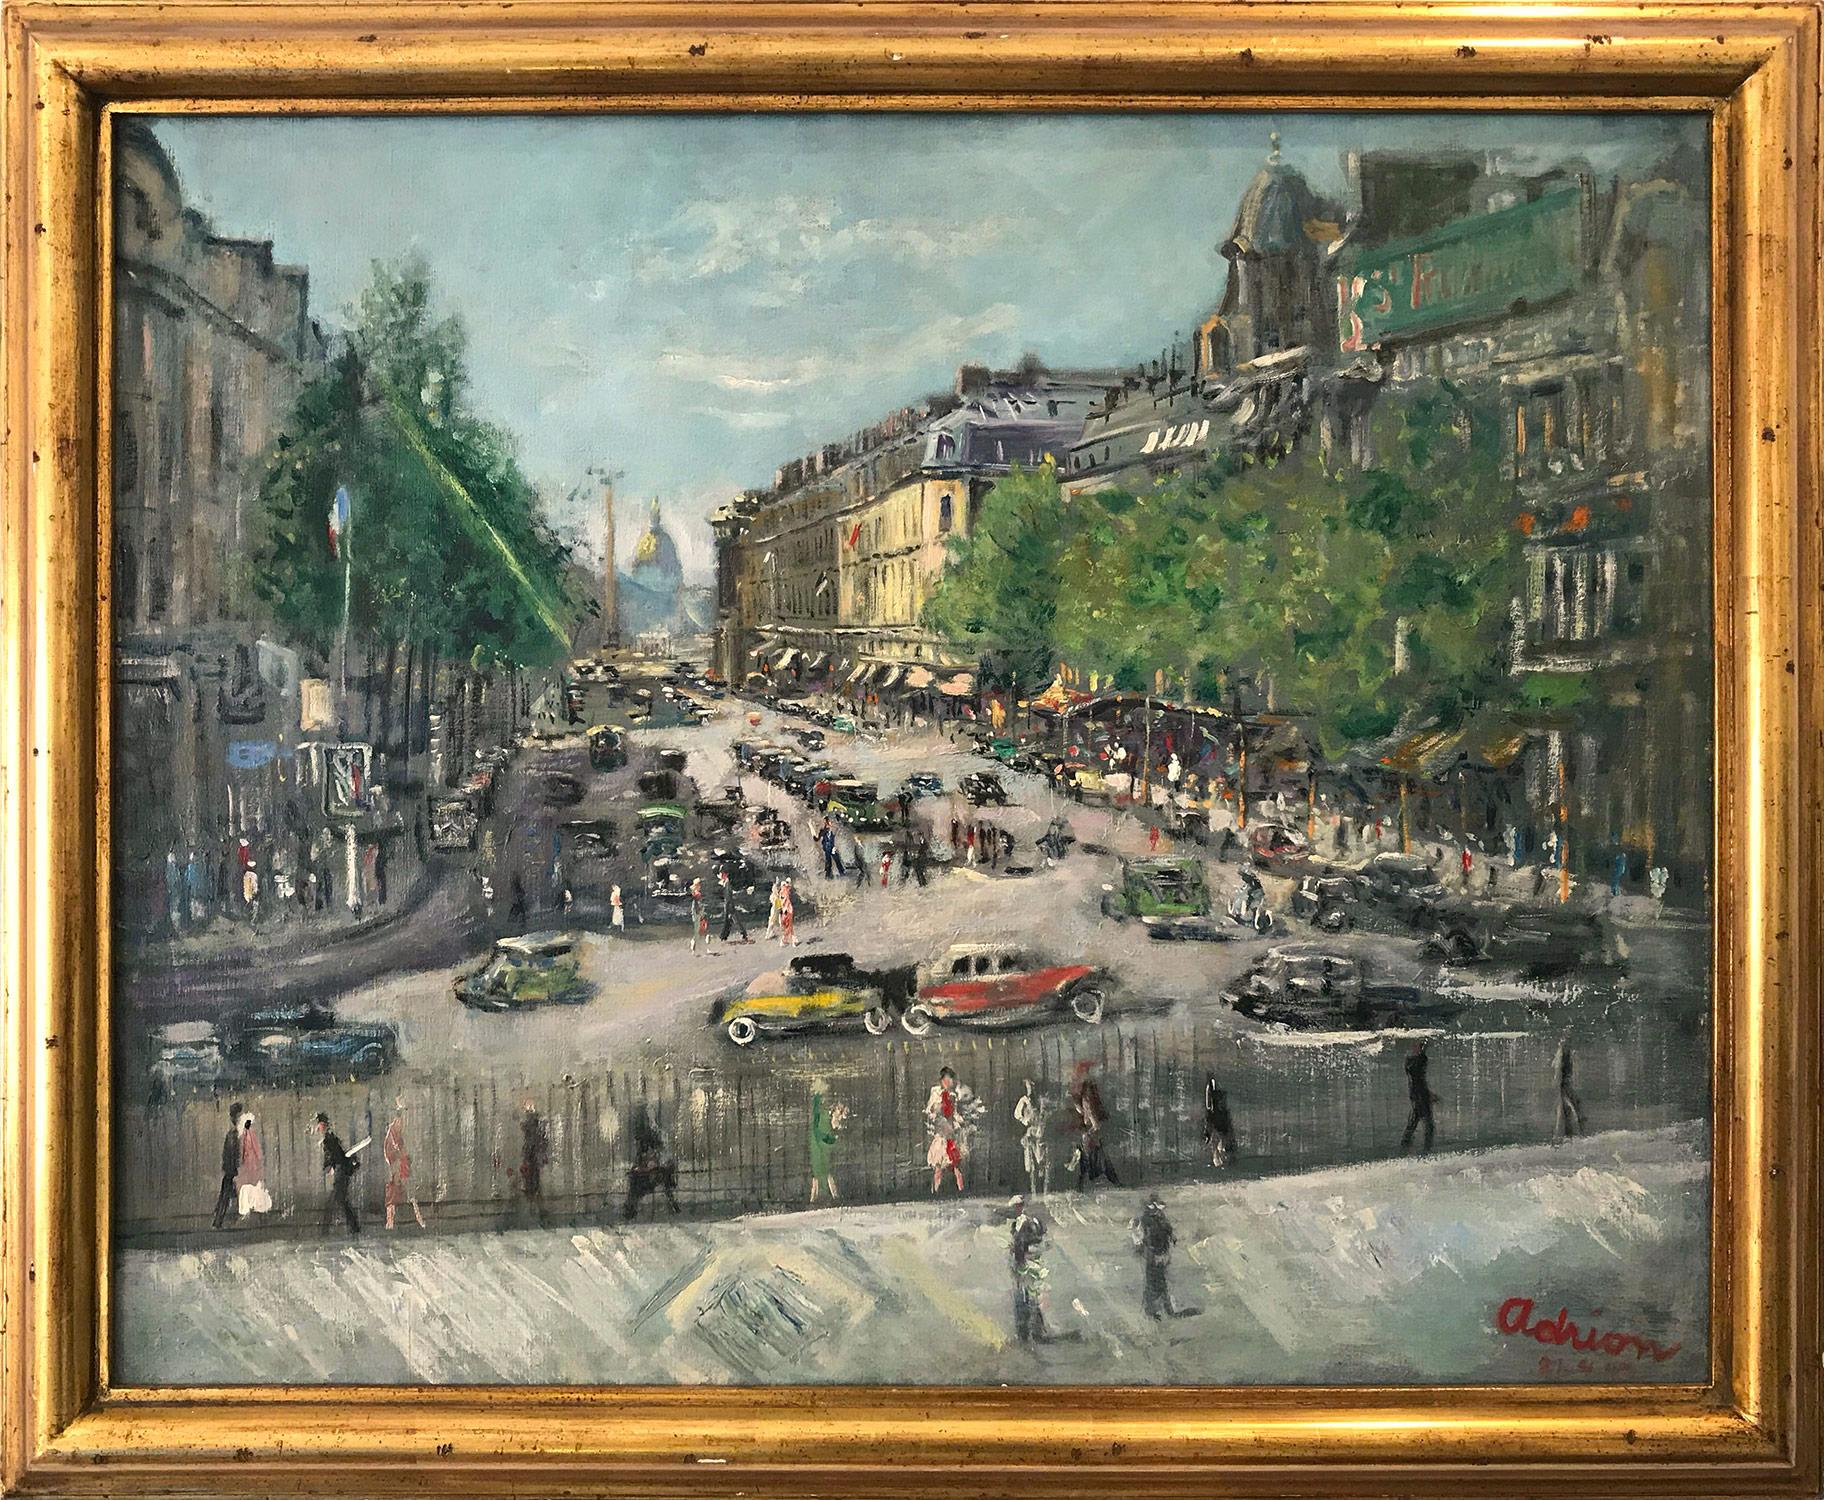 Landscape Painting Lucien Adrion - "Vue depuis L'église de la Madeleine" Scène de plein air post-impressionniste française